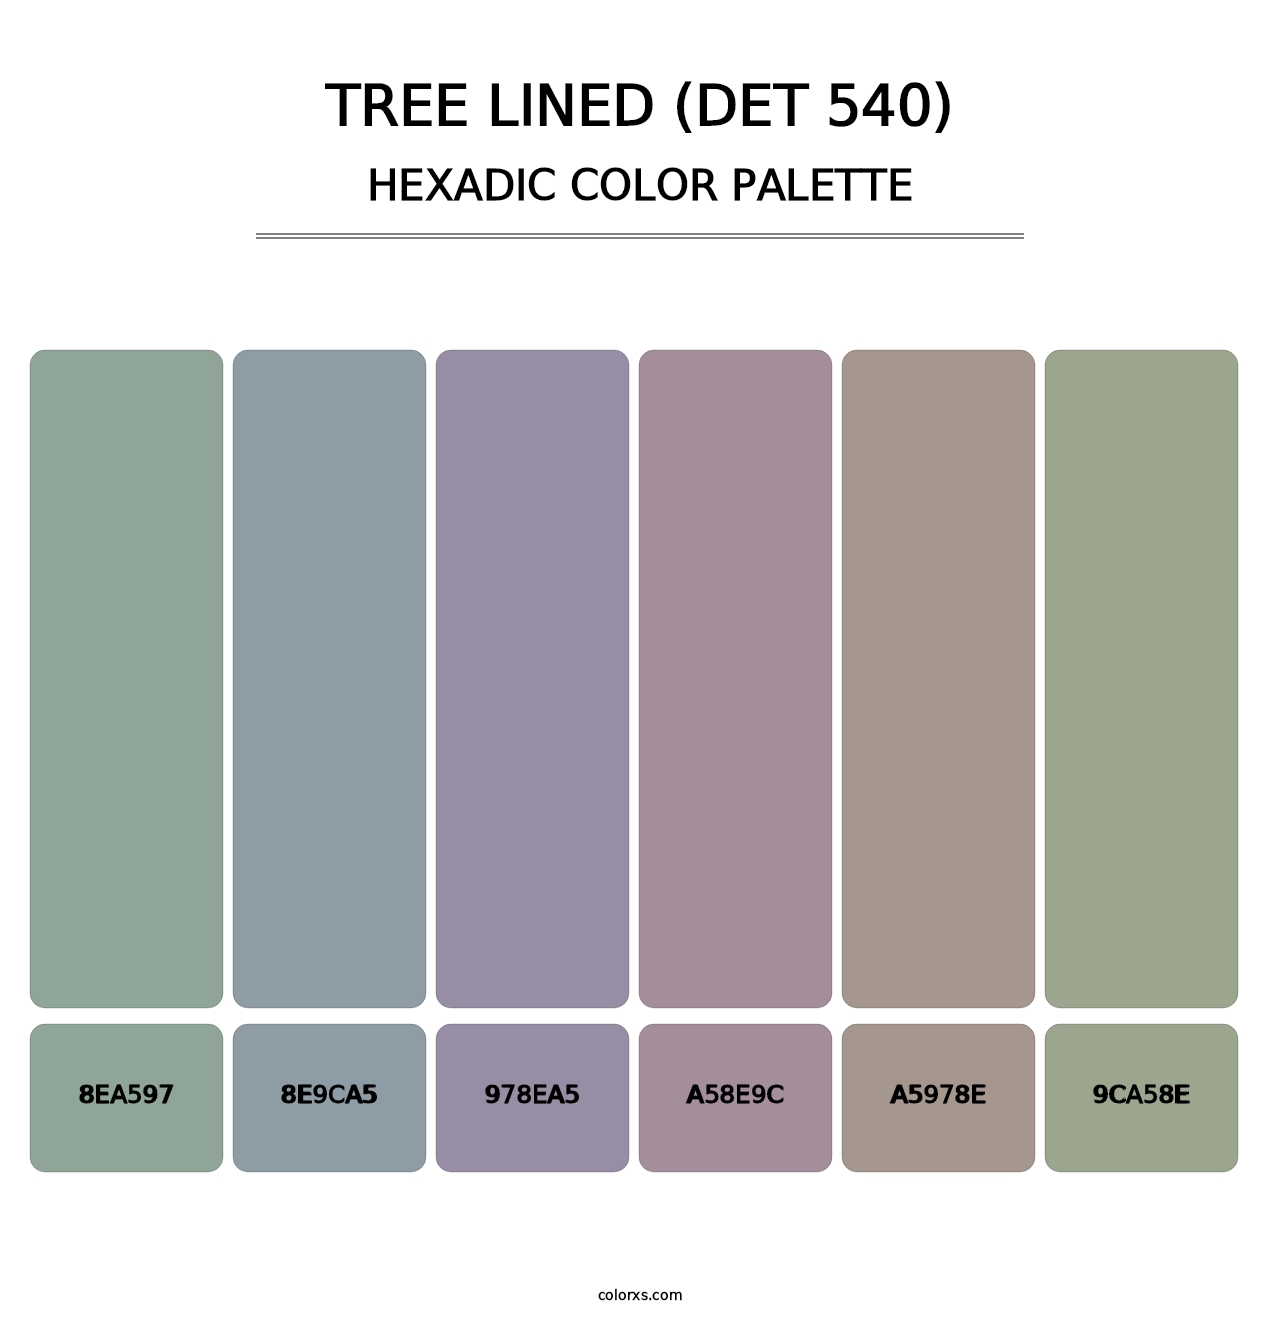 Tree Lined (DET 540) - Hexadic Color Palette